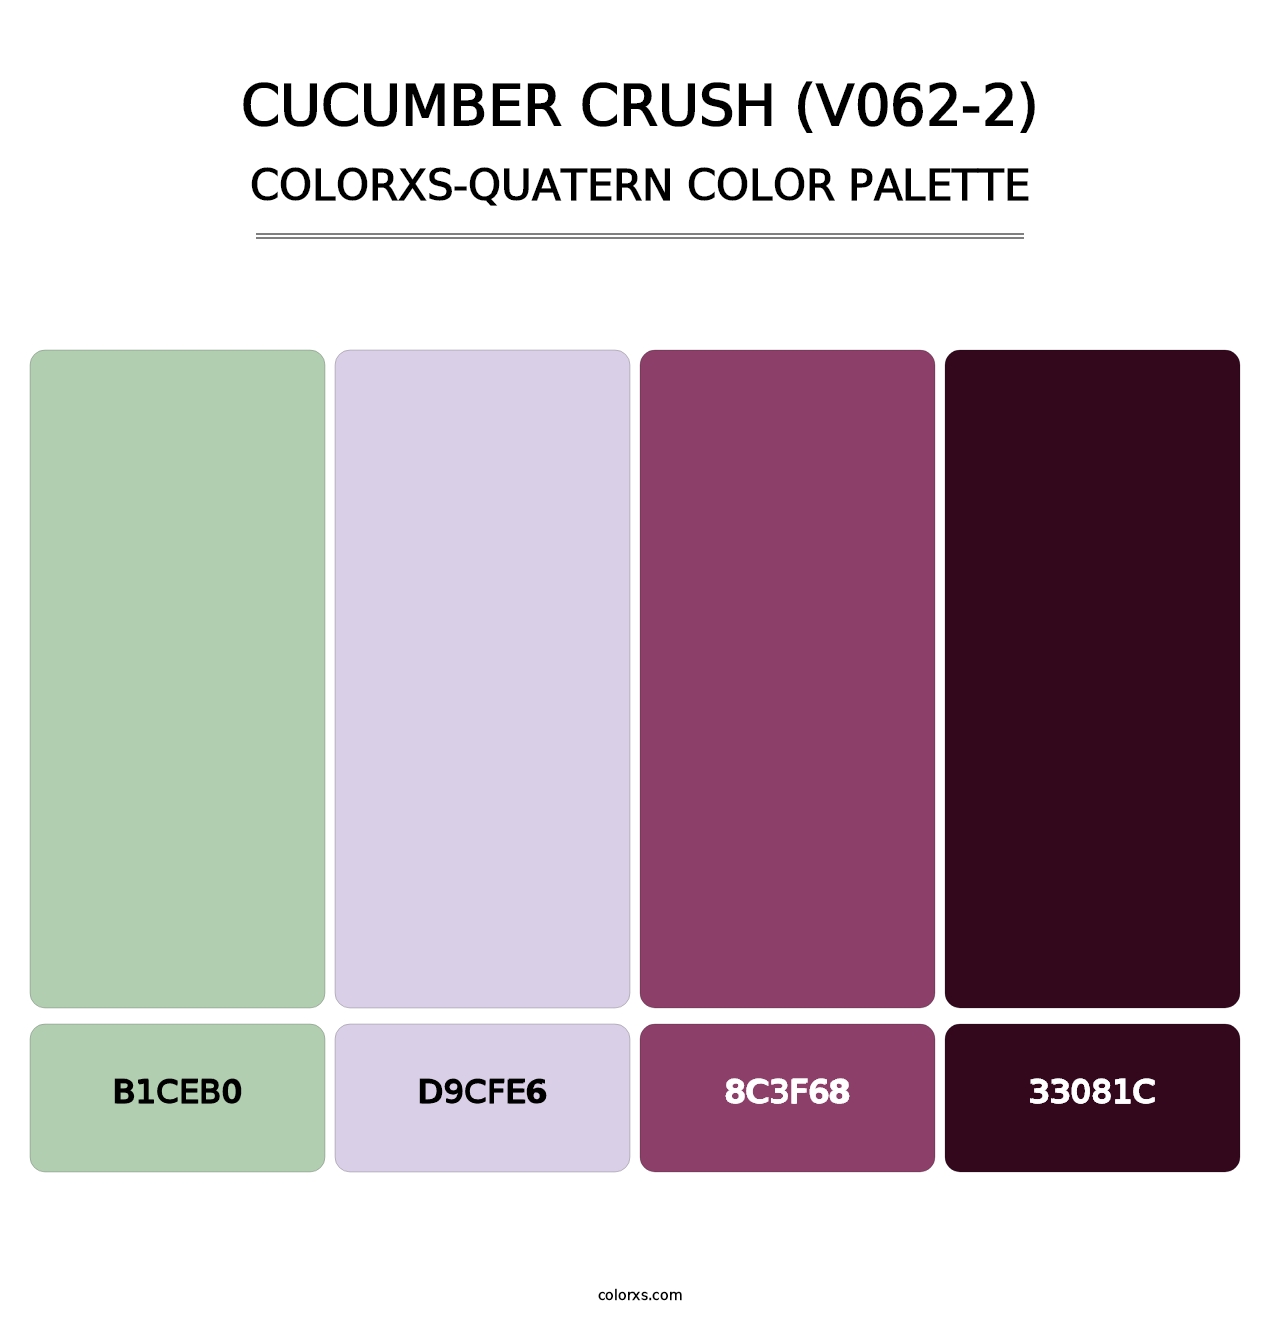 Cucumber Crush (V062-2) - Colorxs Quatern Palette